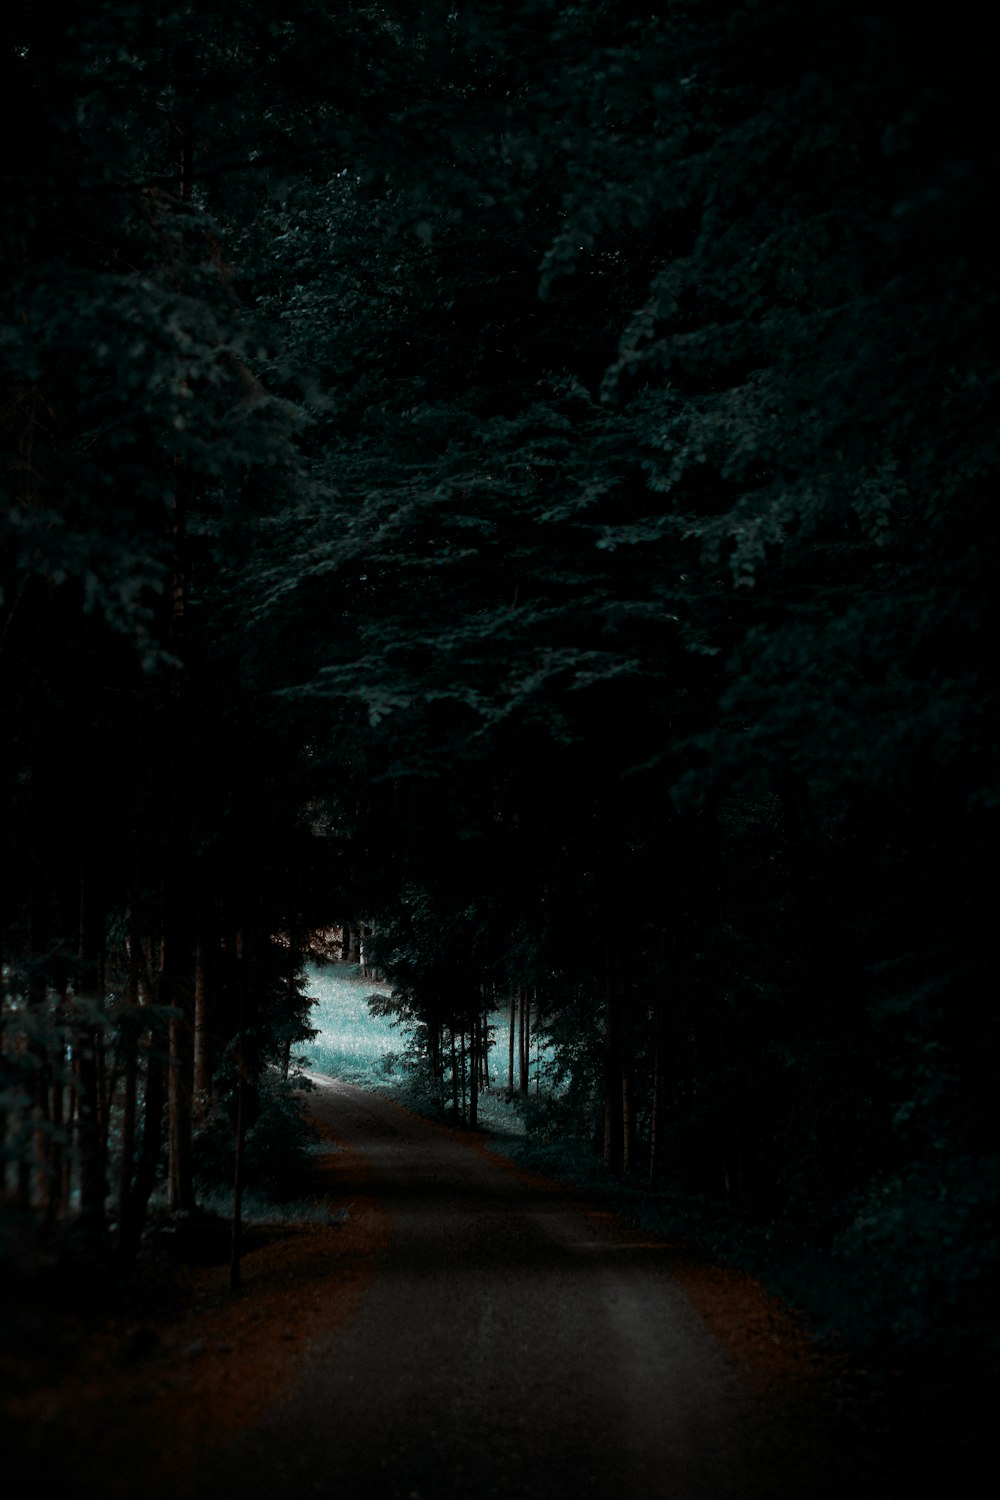 estrada cinzenta entre a floresta